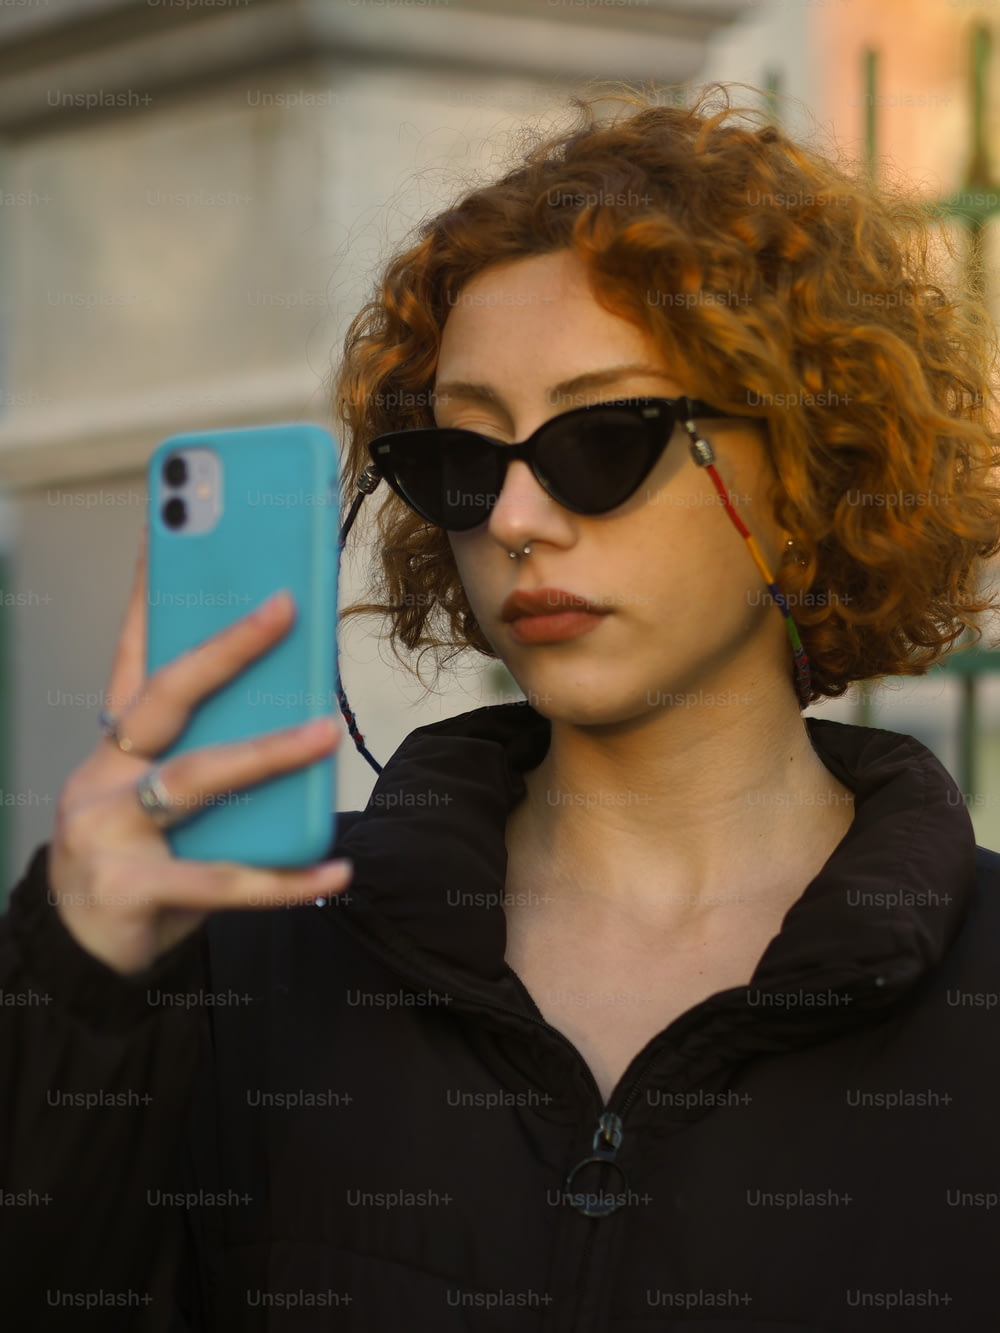 Une femme aux cheveux roux et aux lunettes de soleil tenant un téléphone portable